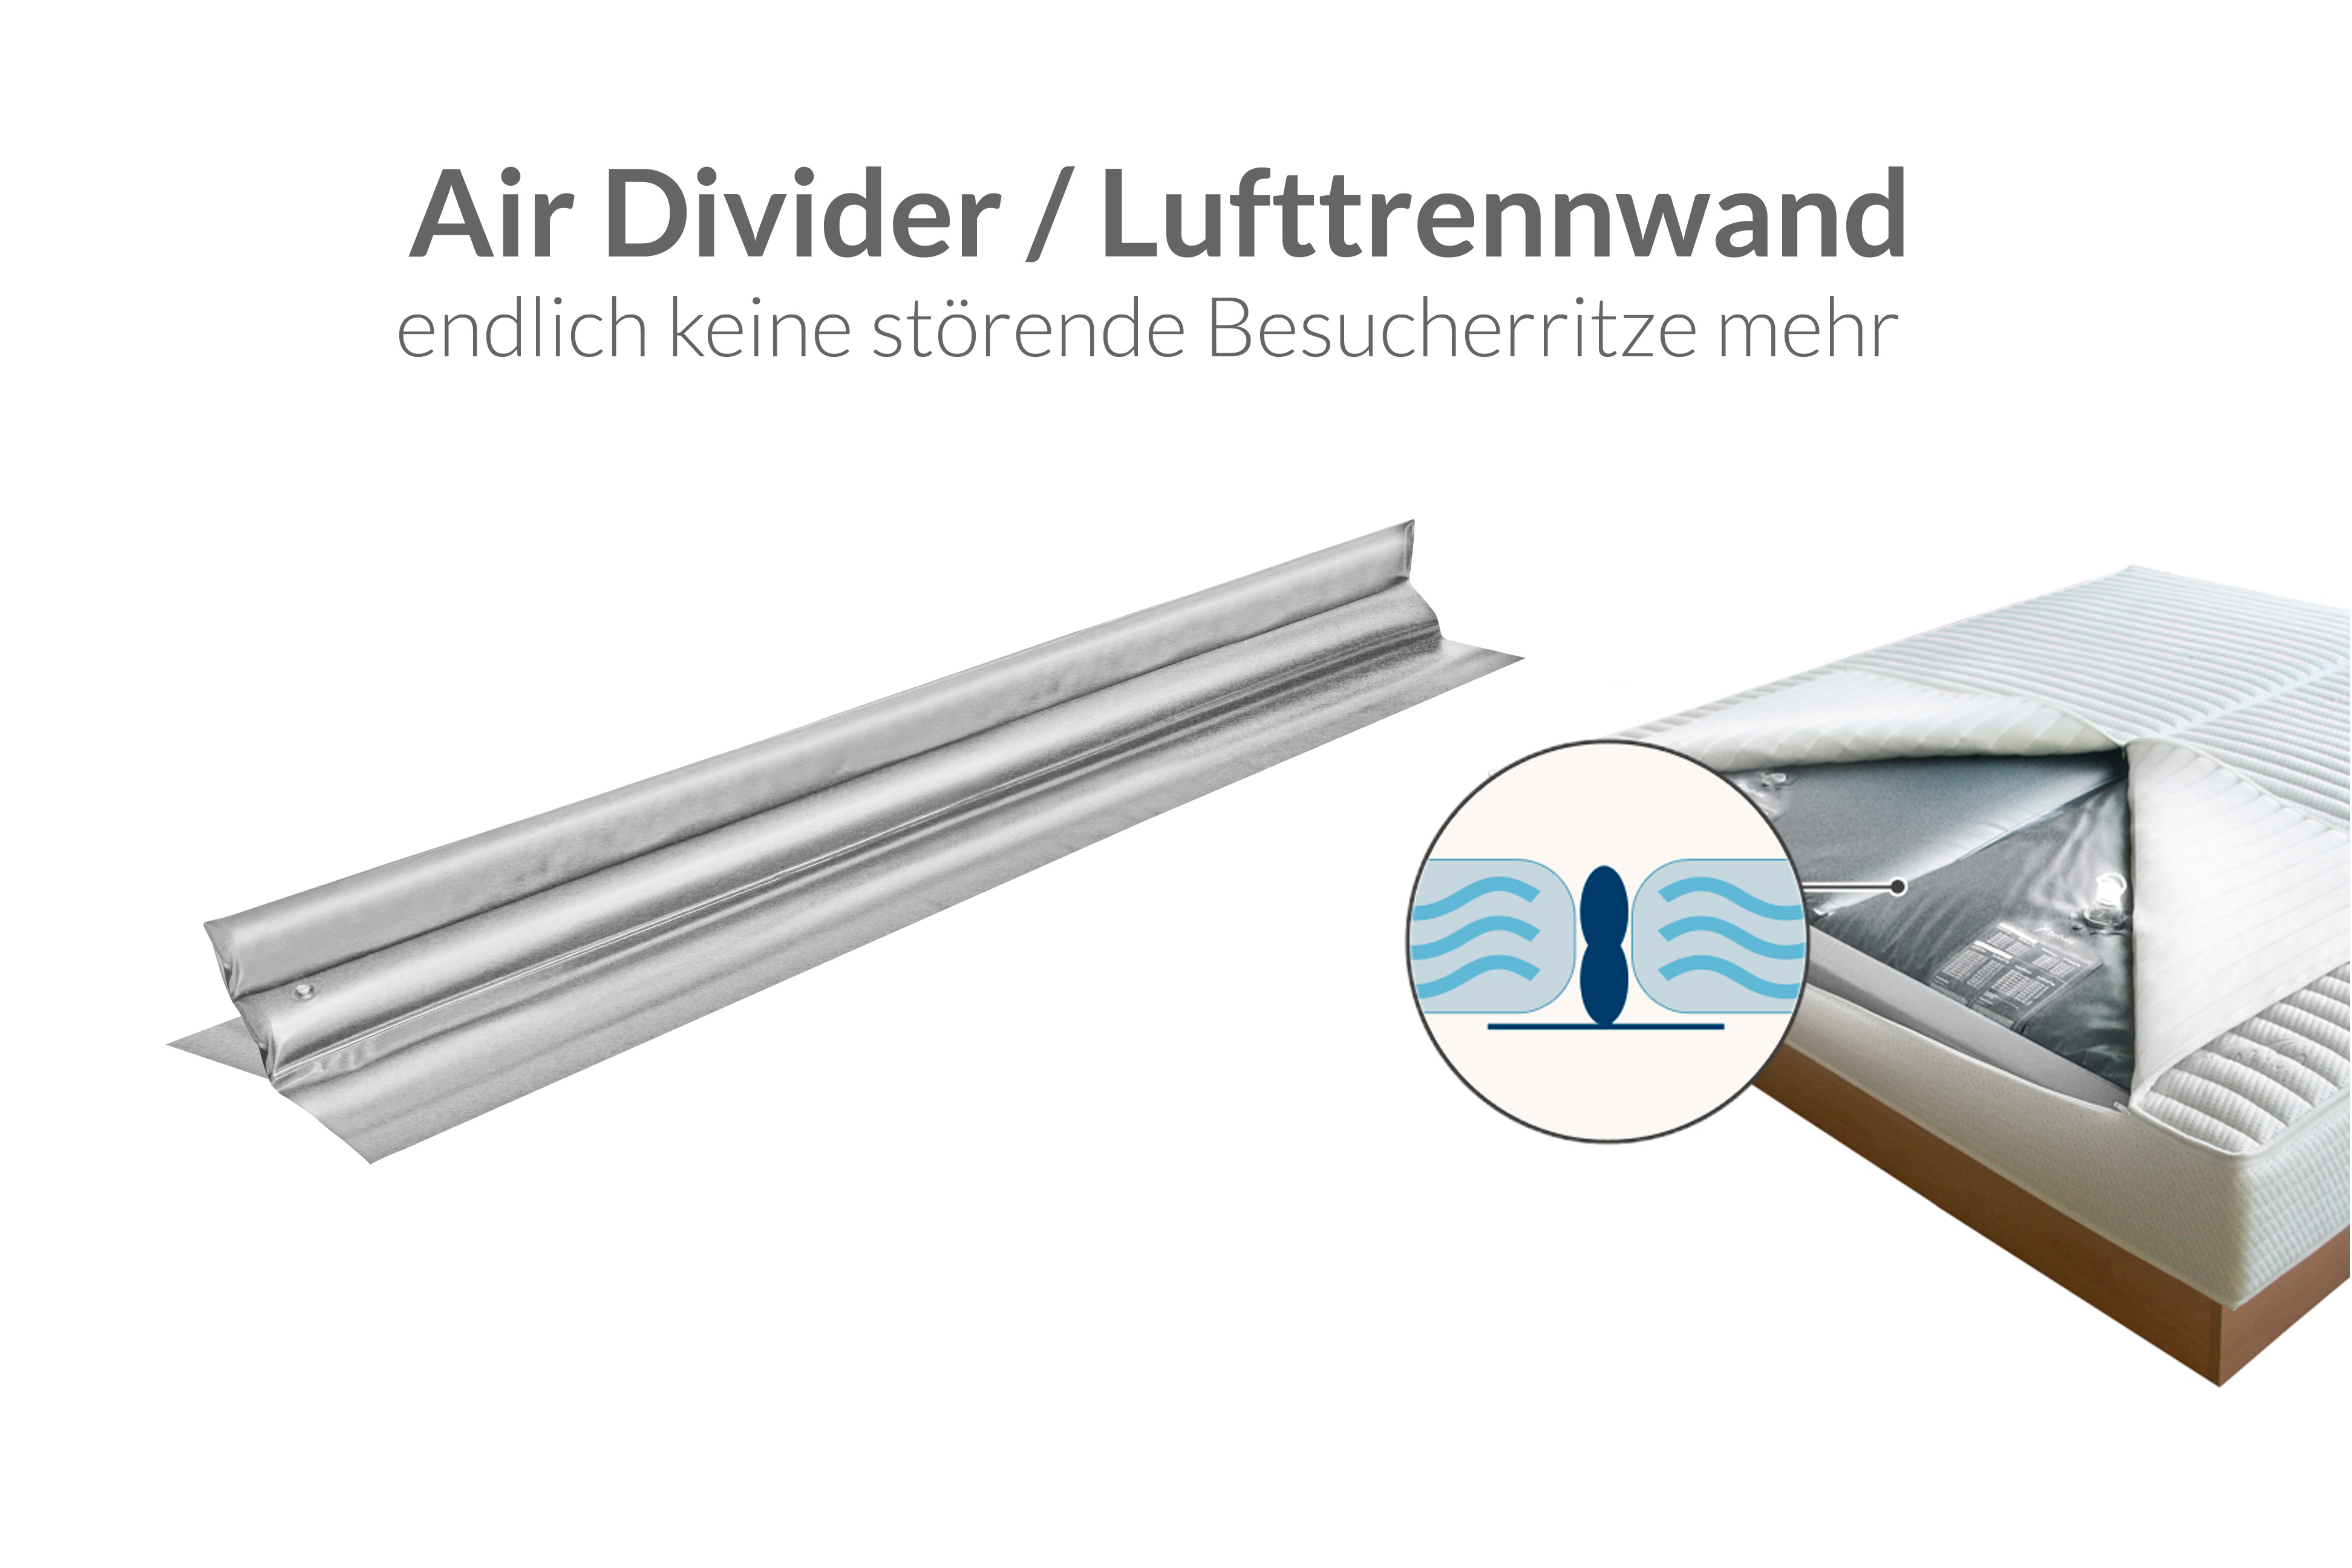 Lufttrennwand für Dual System - Air Divider